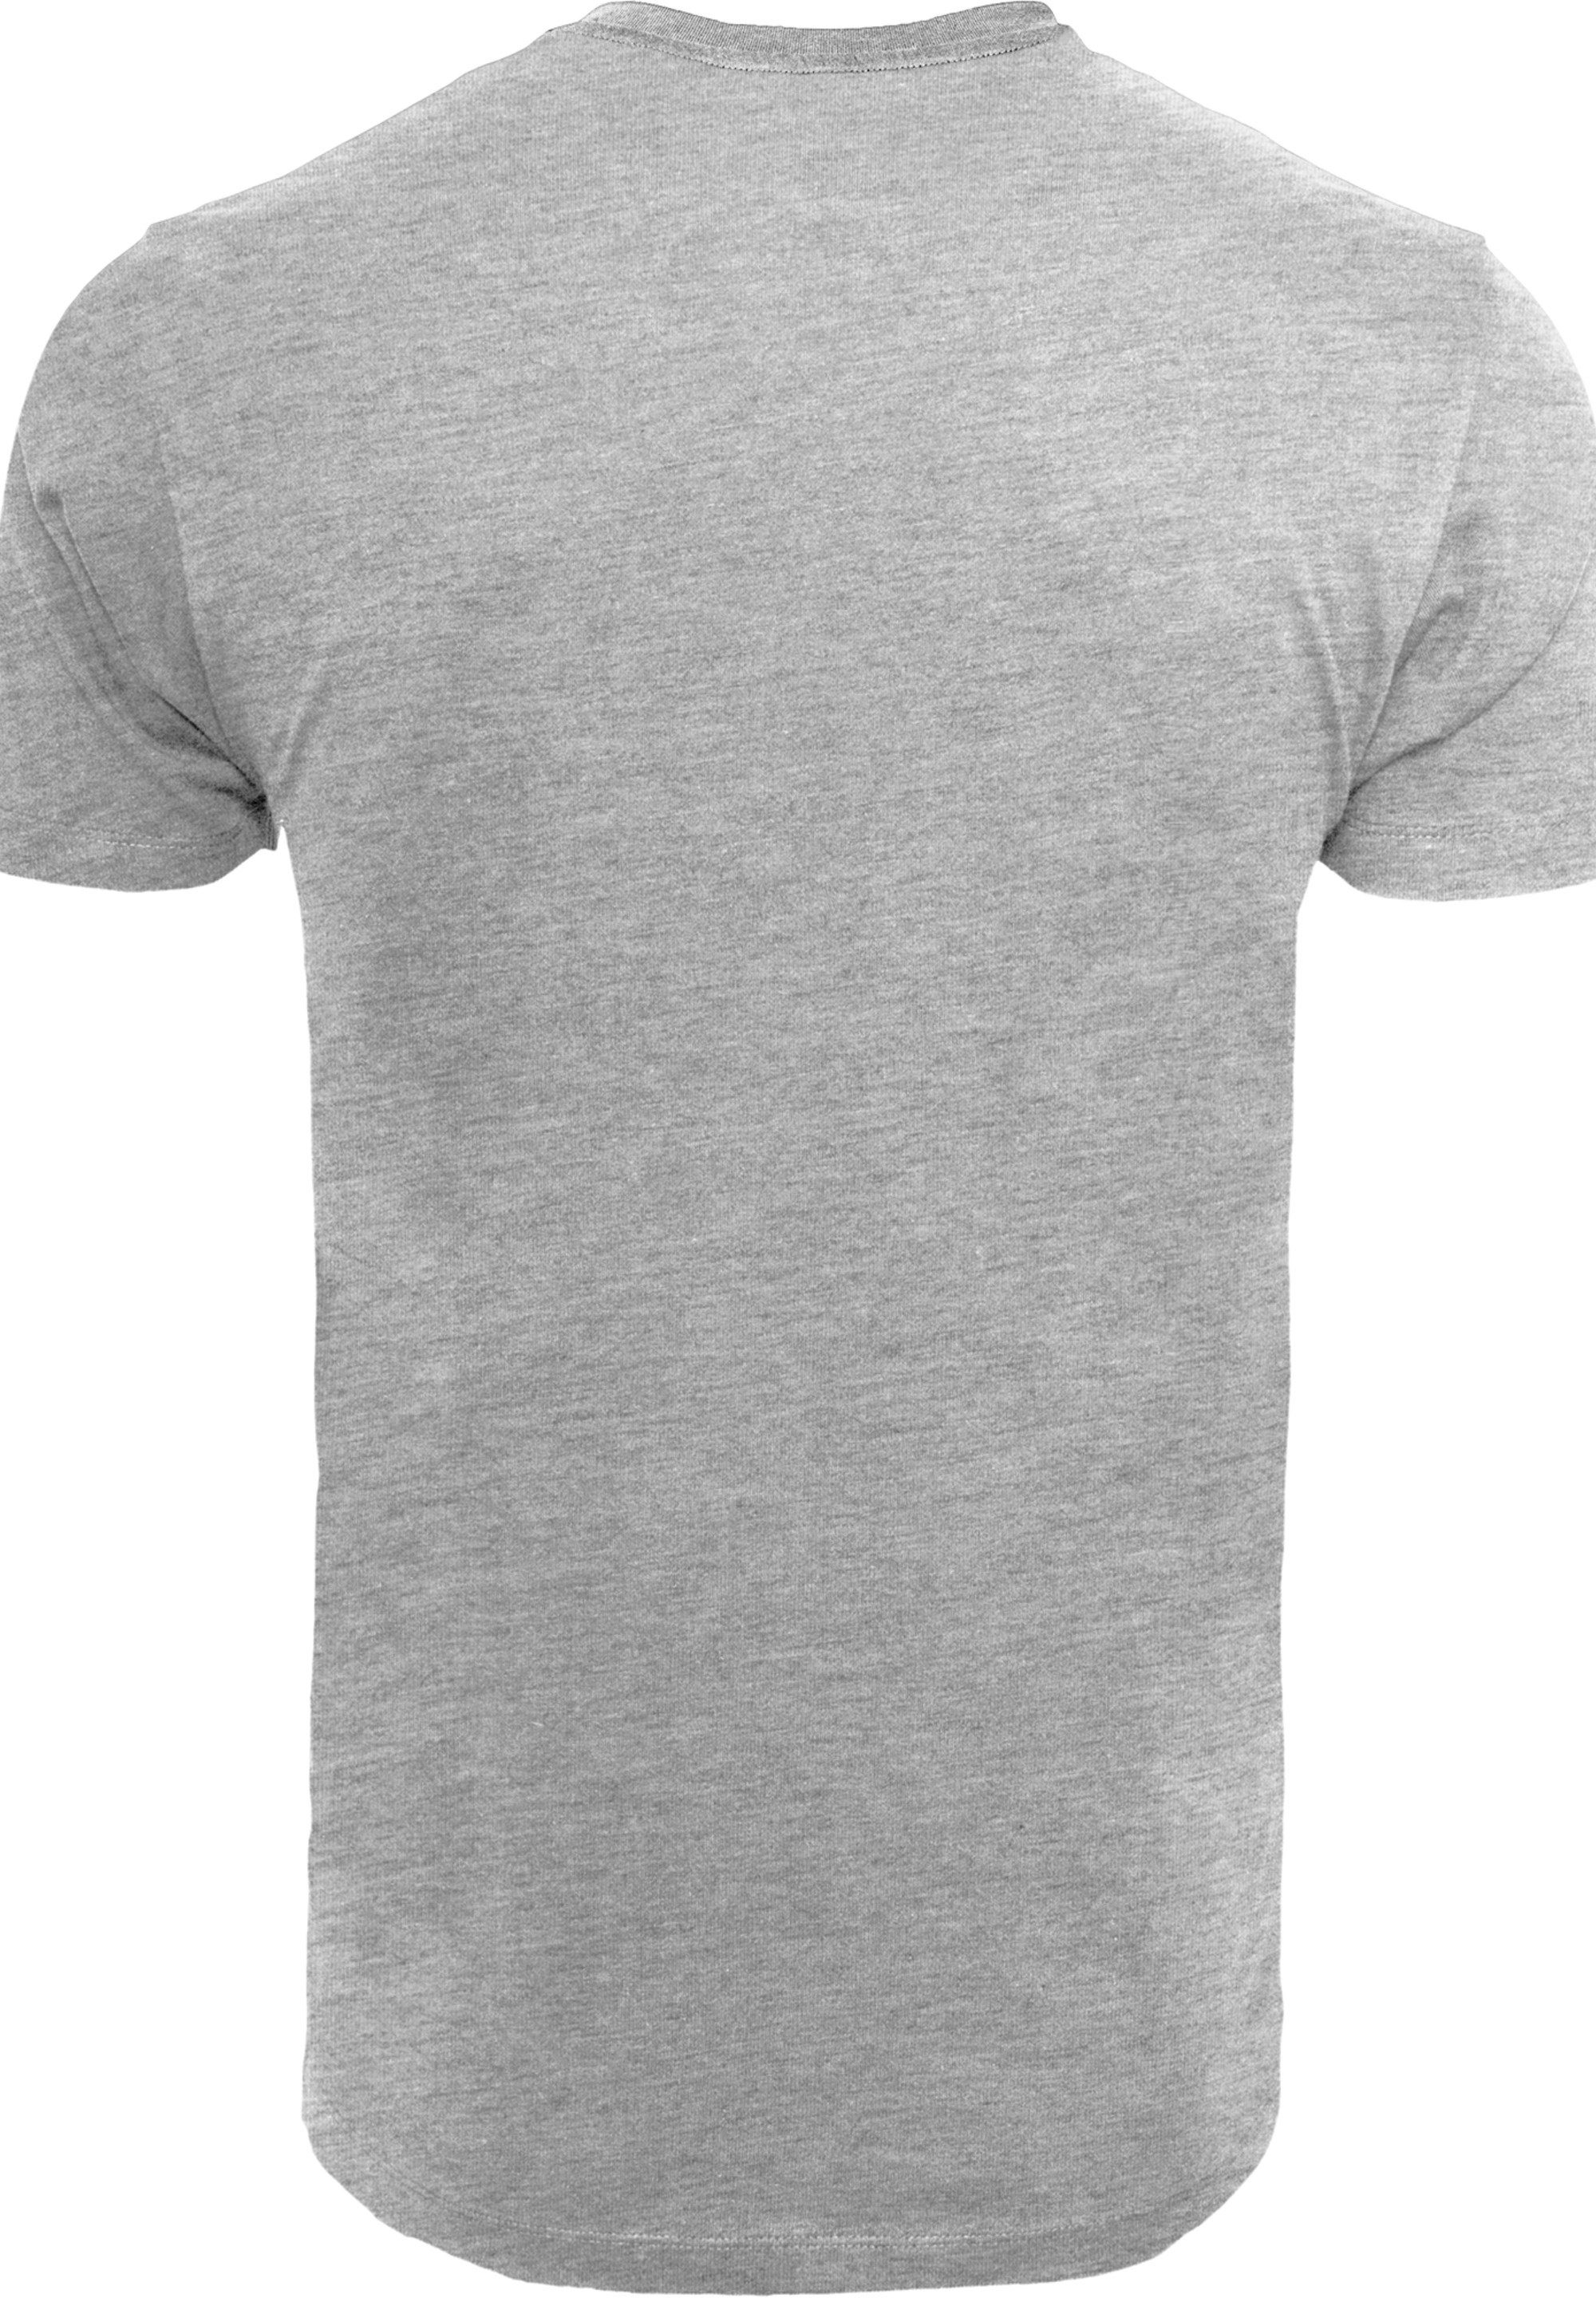 F4NT4STIC T-Shirt Tom Prank grey heather und Jerry Merch,Regular-Fit,Basic,Bedruckt Rocket Herren,Premium